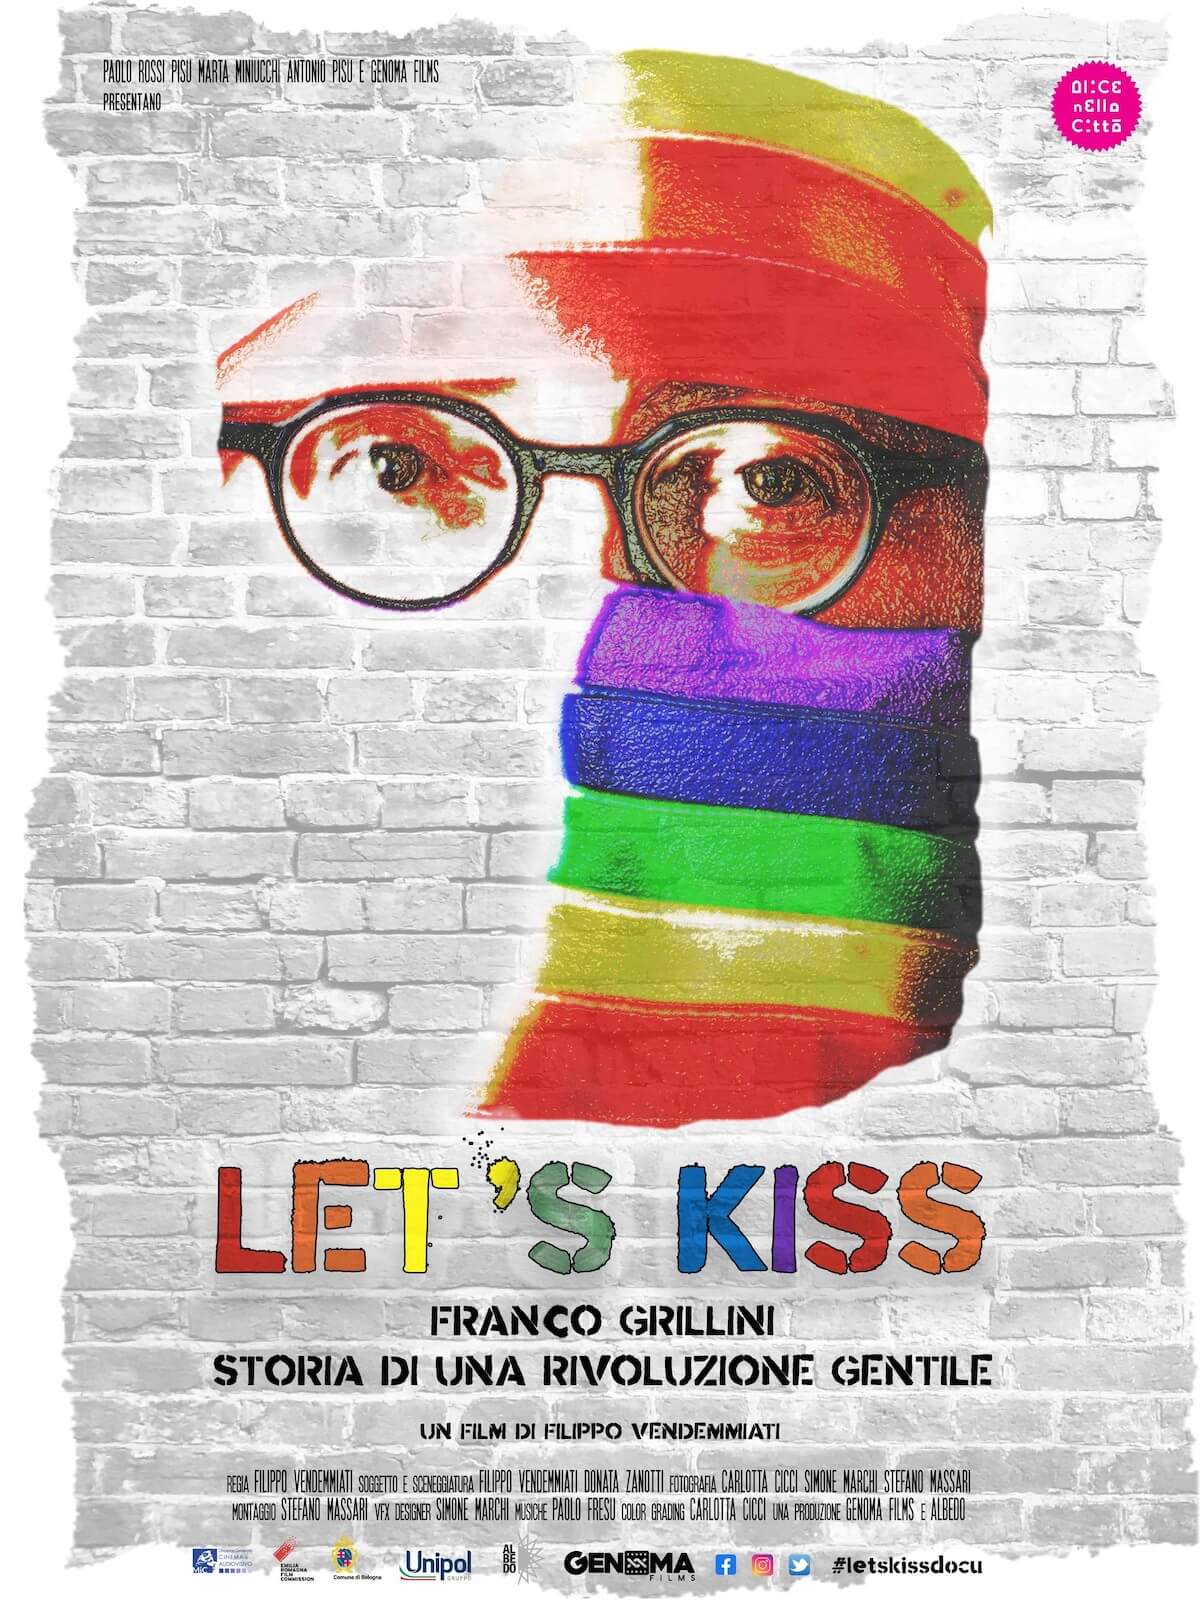 Let’s Kiss, 40 anni di storia LGBT attraverso gli occhi, il sorriso e la voce di Franco Grillini. La recensione - Lets Kiss Franco Grillini Storia di una rivoluzione gentile - Gay.it